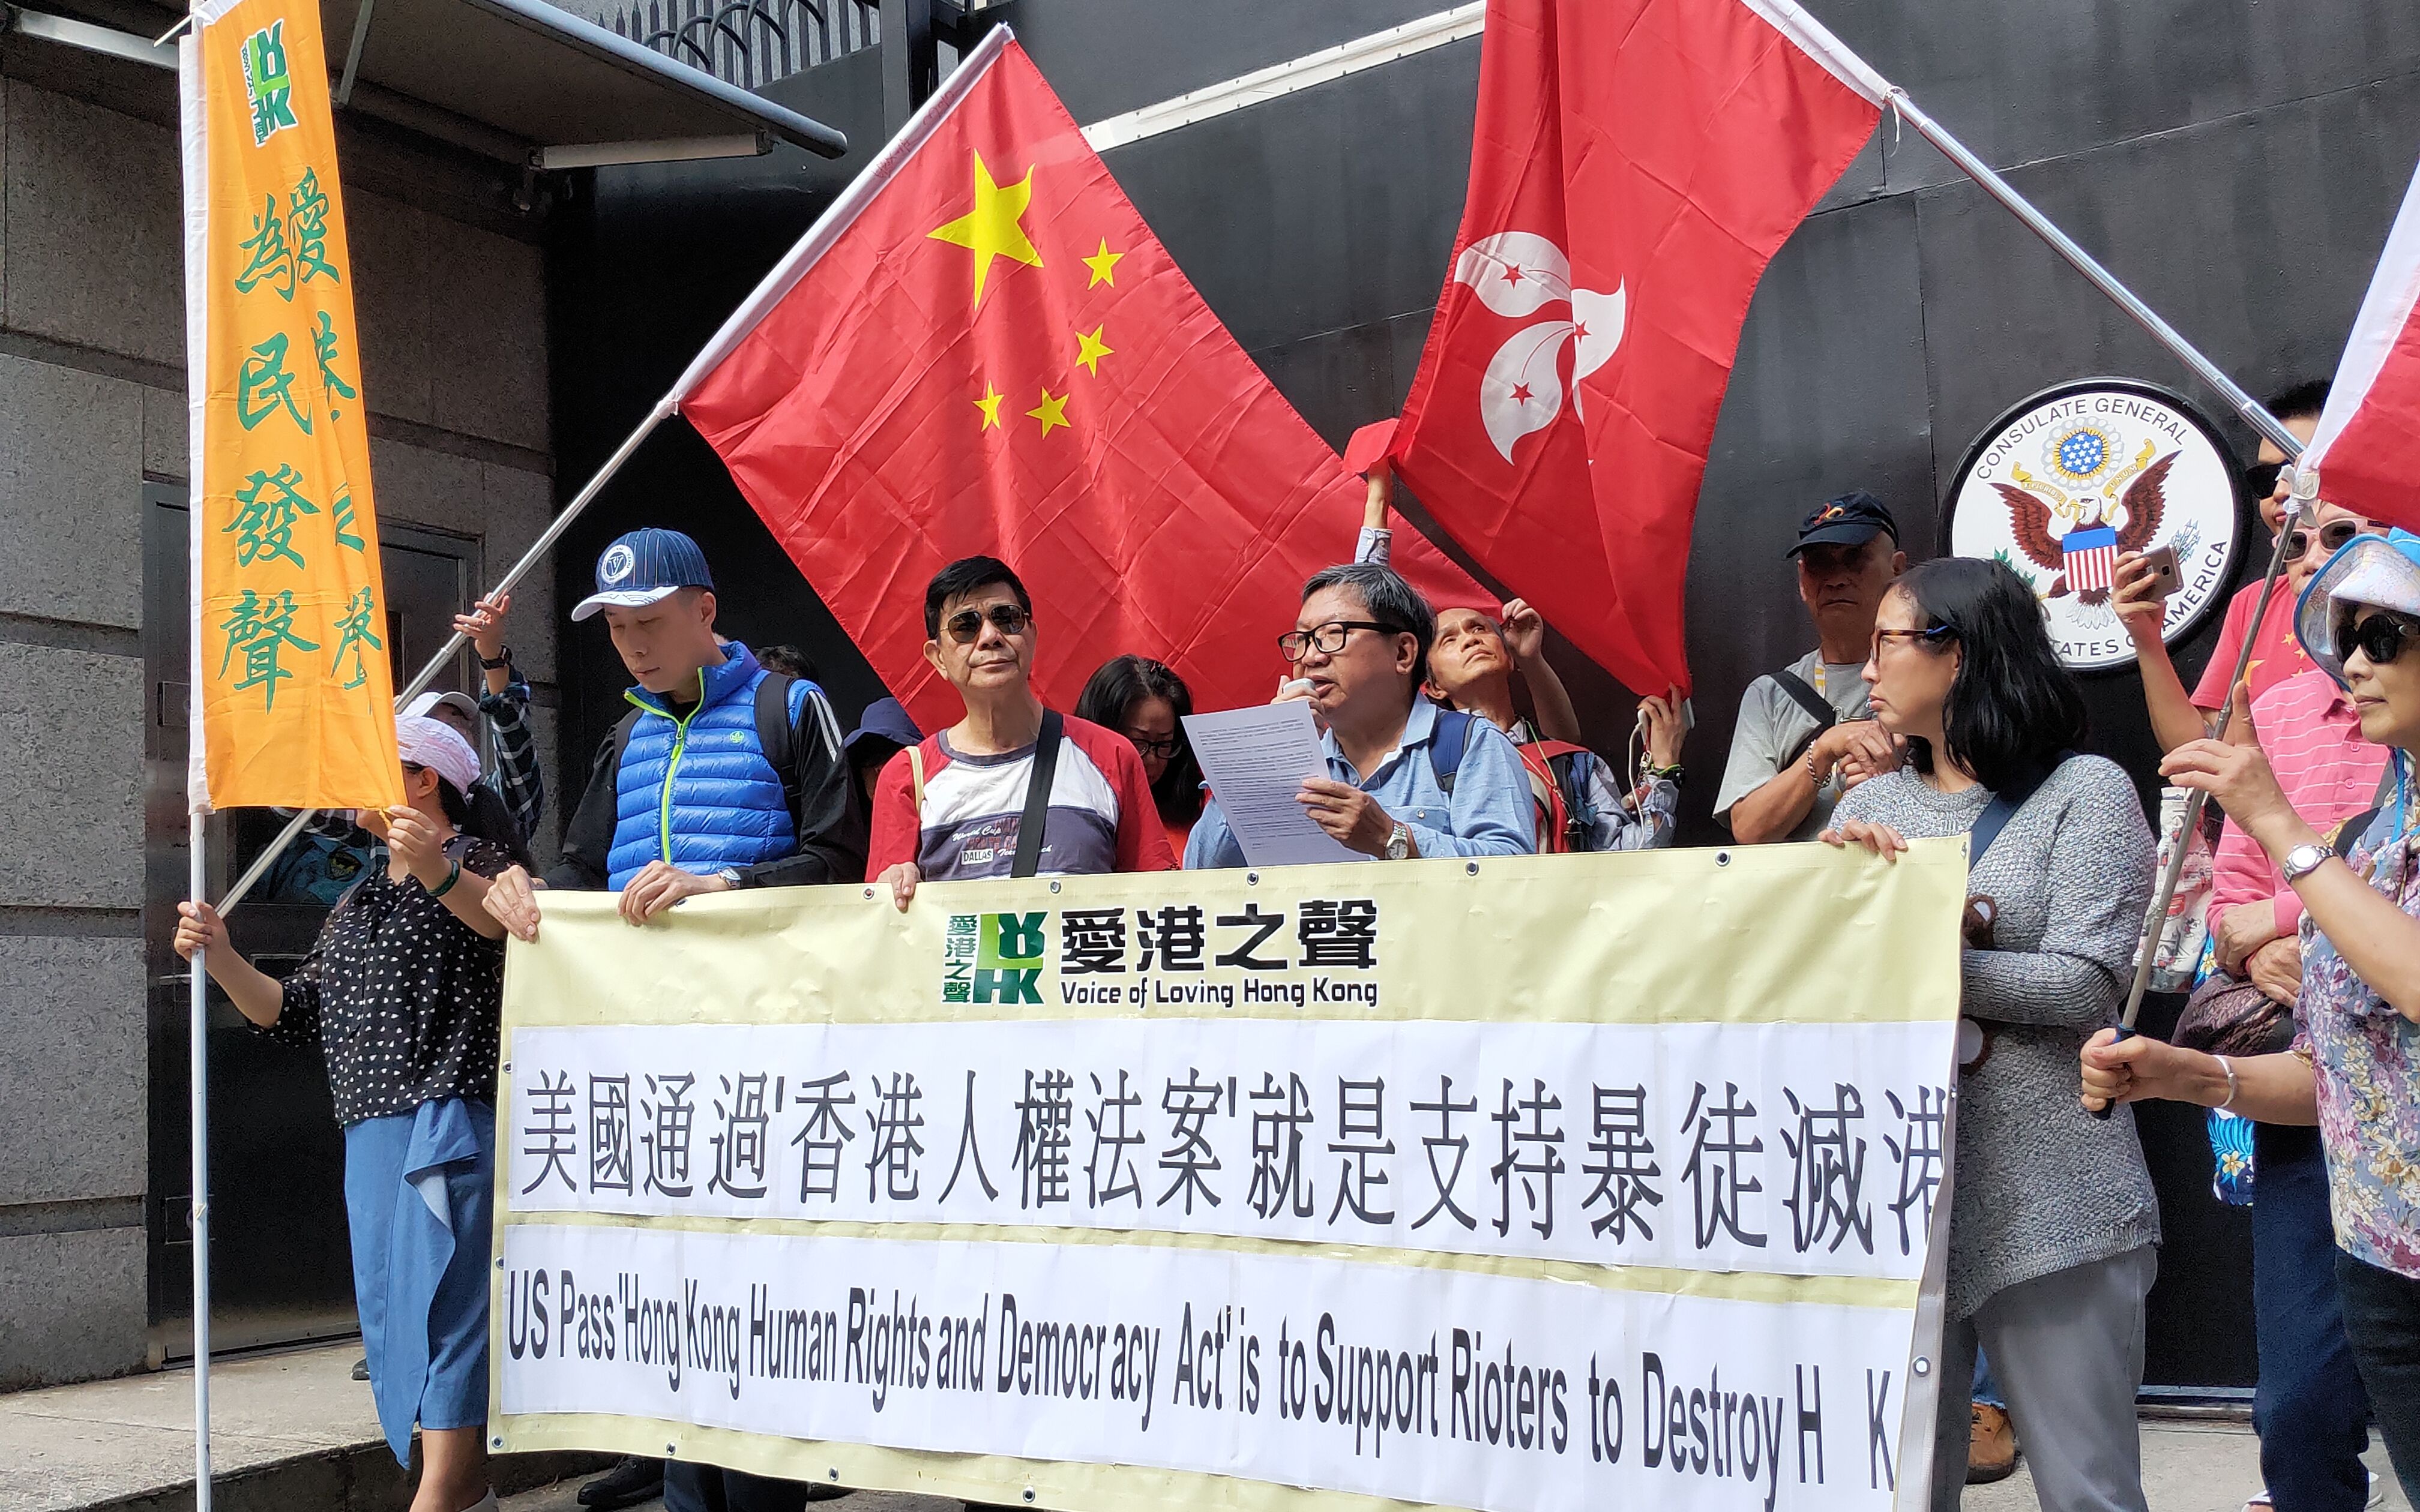 1999年中国反美示威游行 : r/DoubanGoosegroup